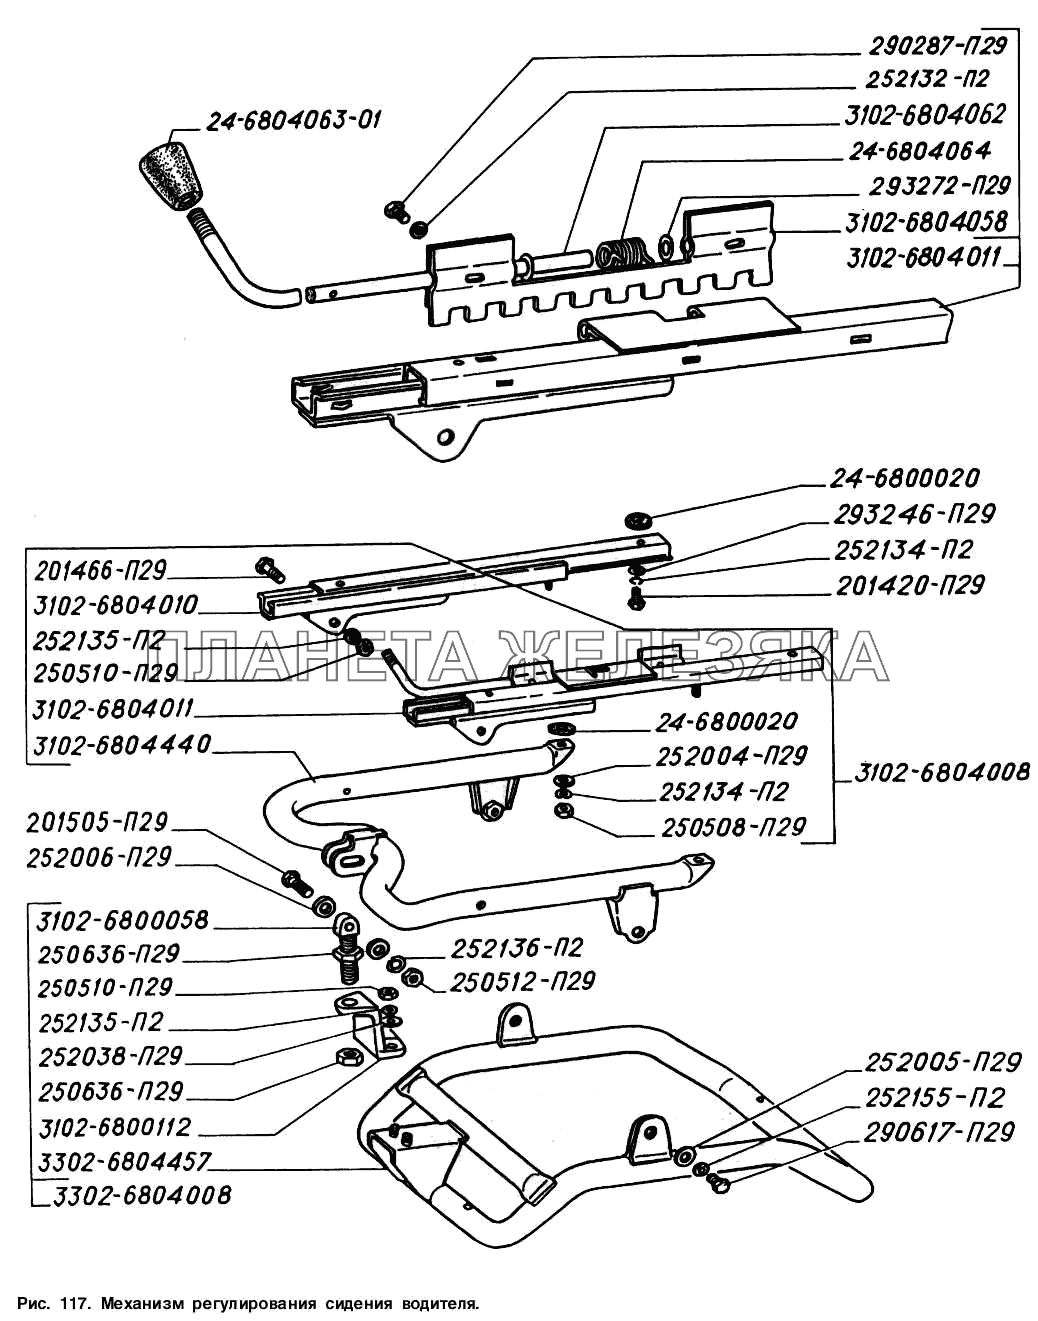 Механизм регулирования сиденья водителя ГАЗ-2217 (Соболь)